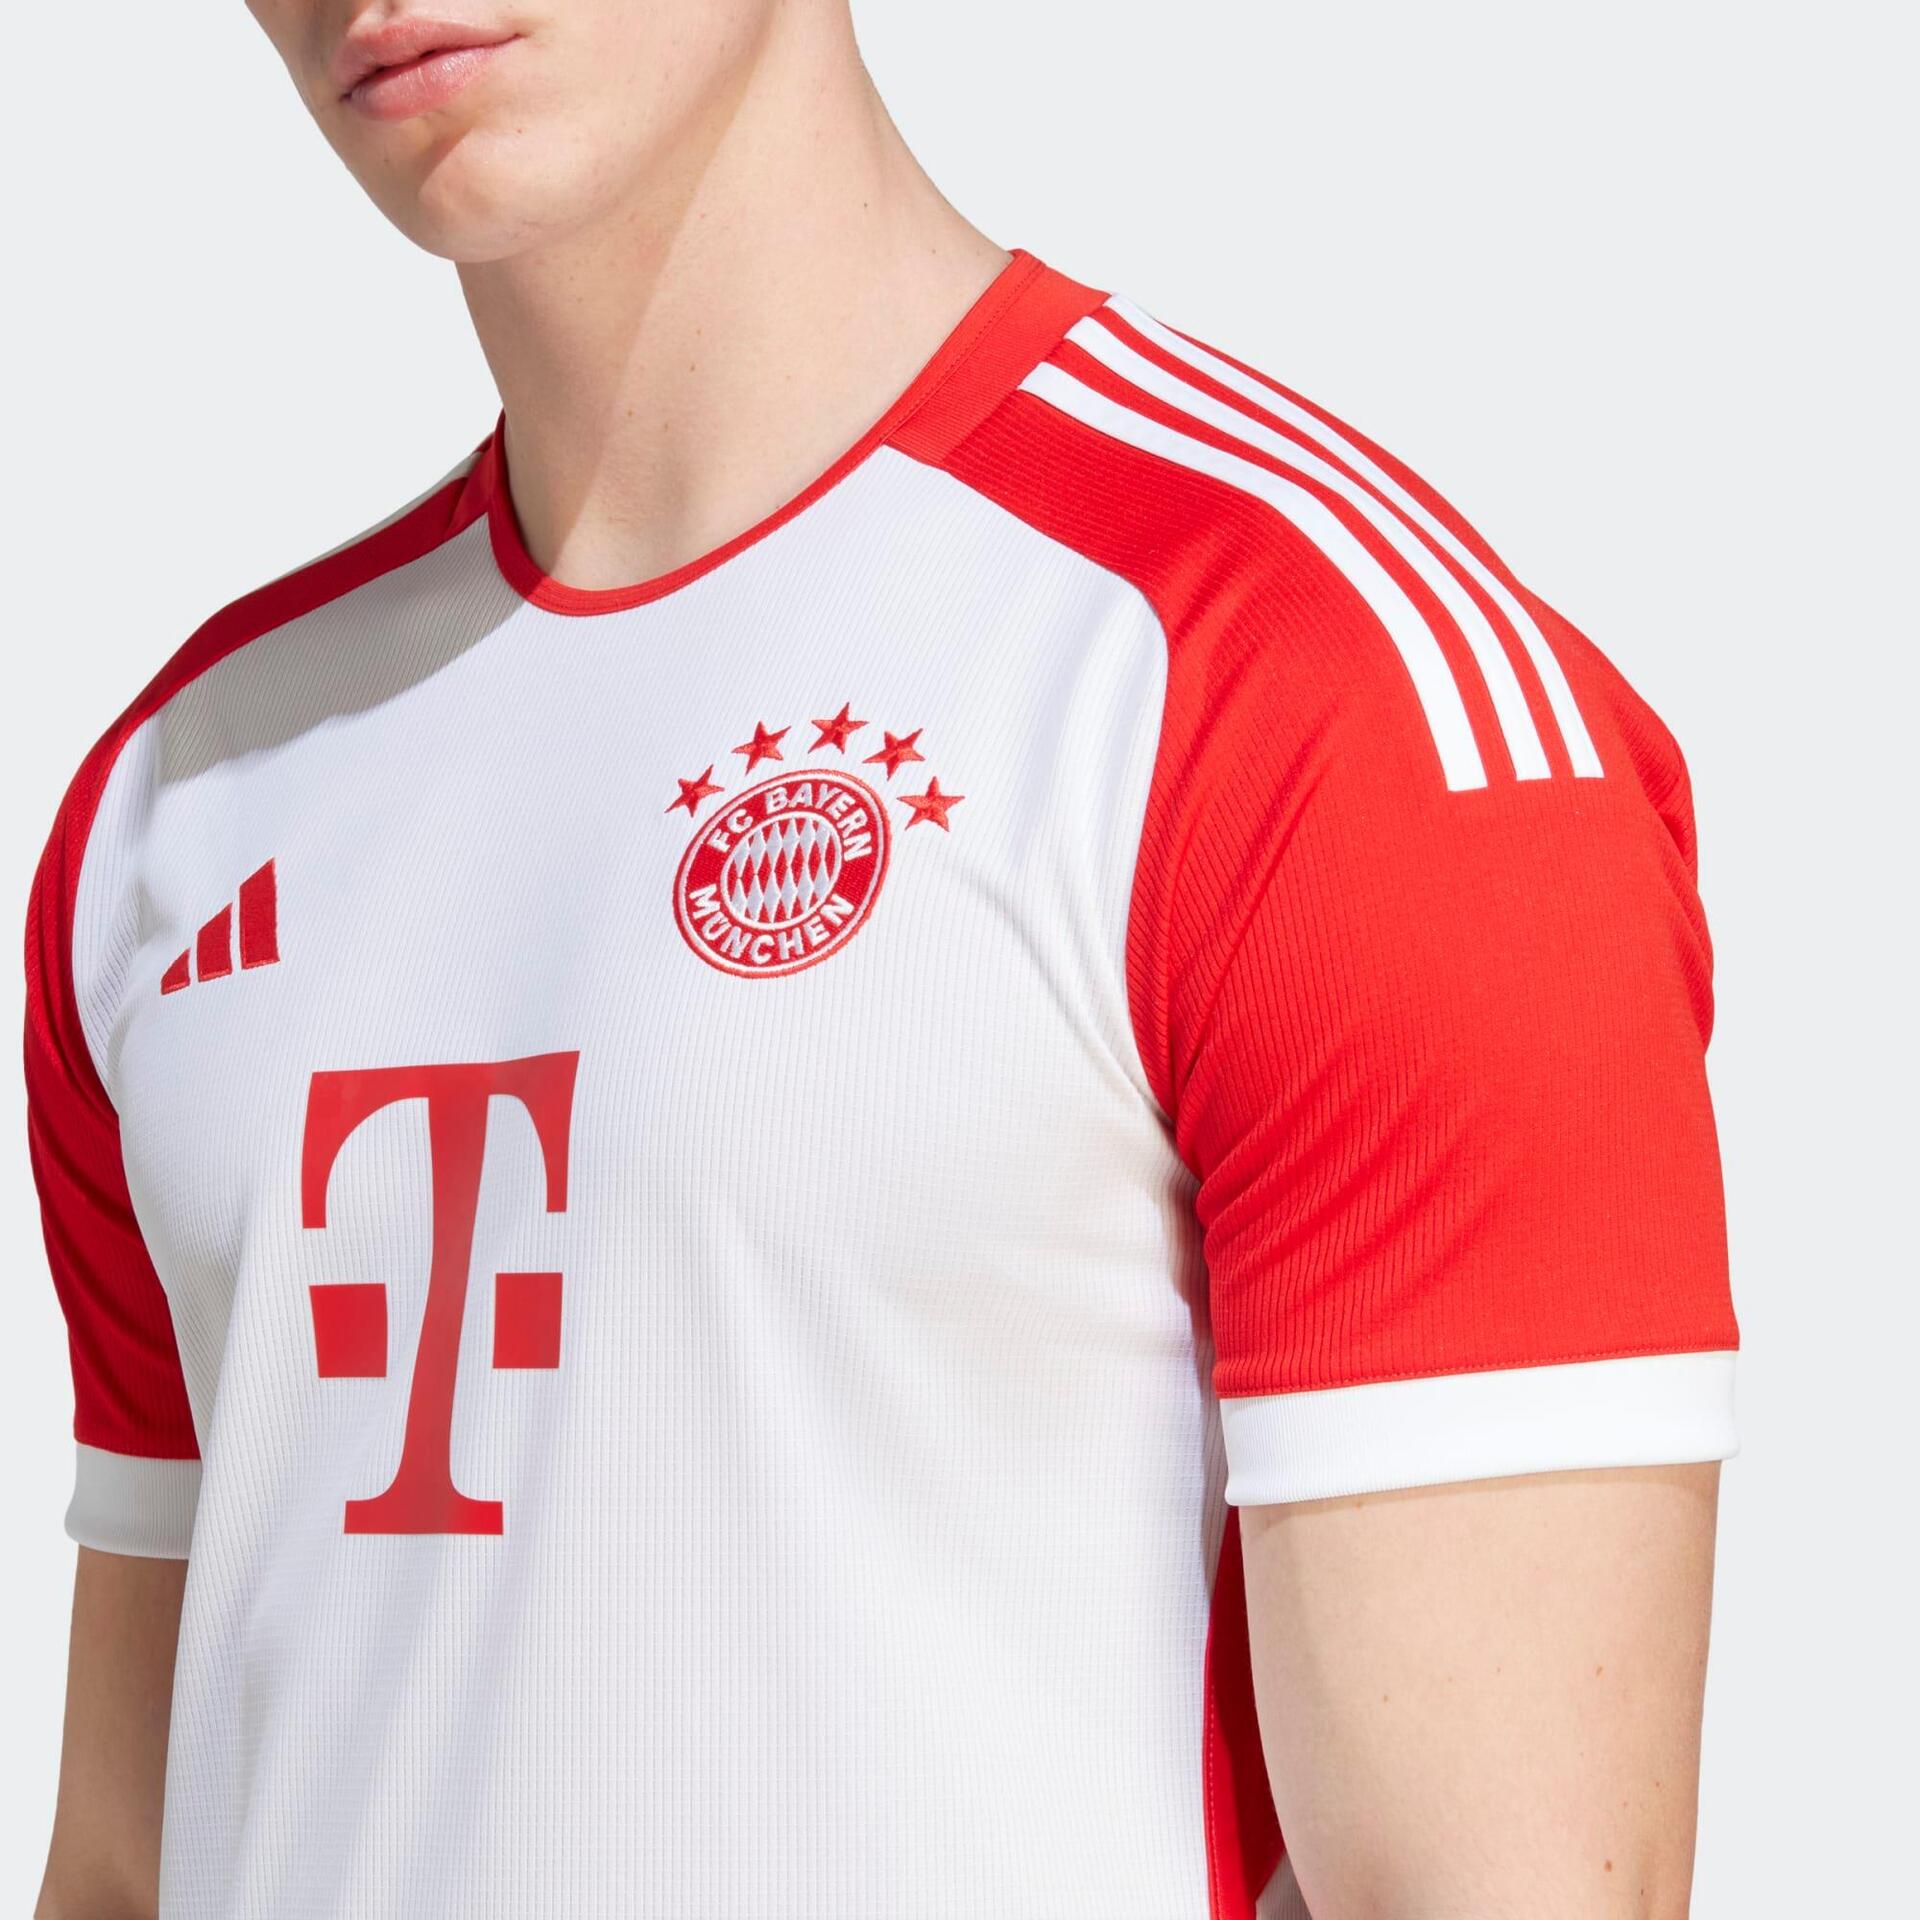 Maillots de football Adidas du Bayern pour les joueurs et les supporters